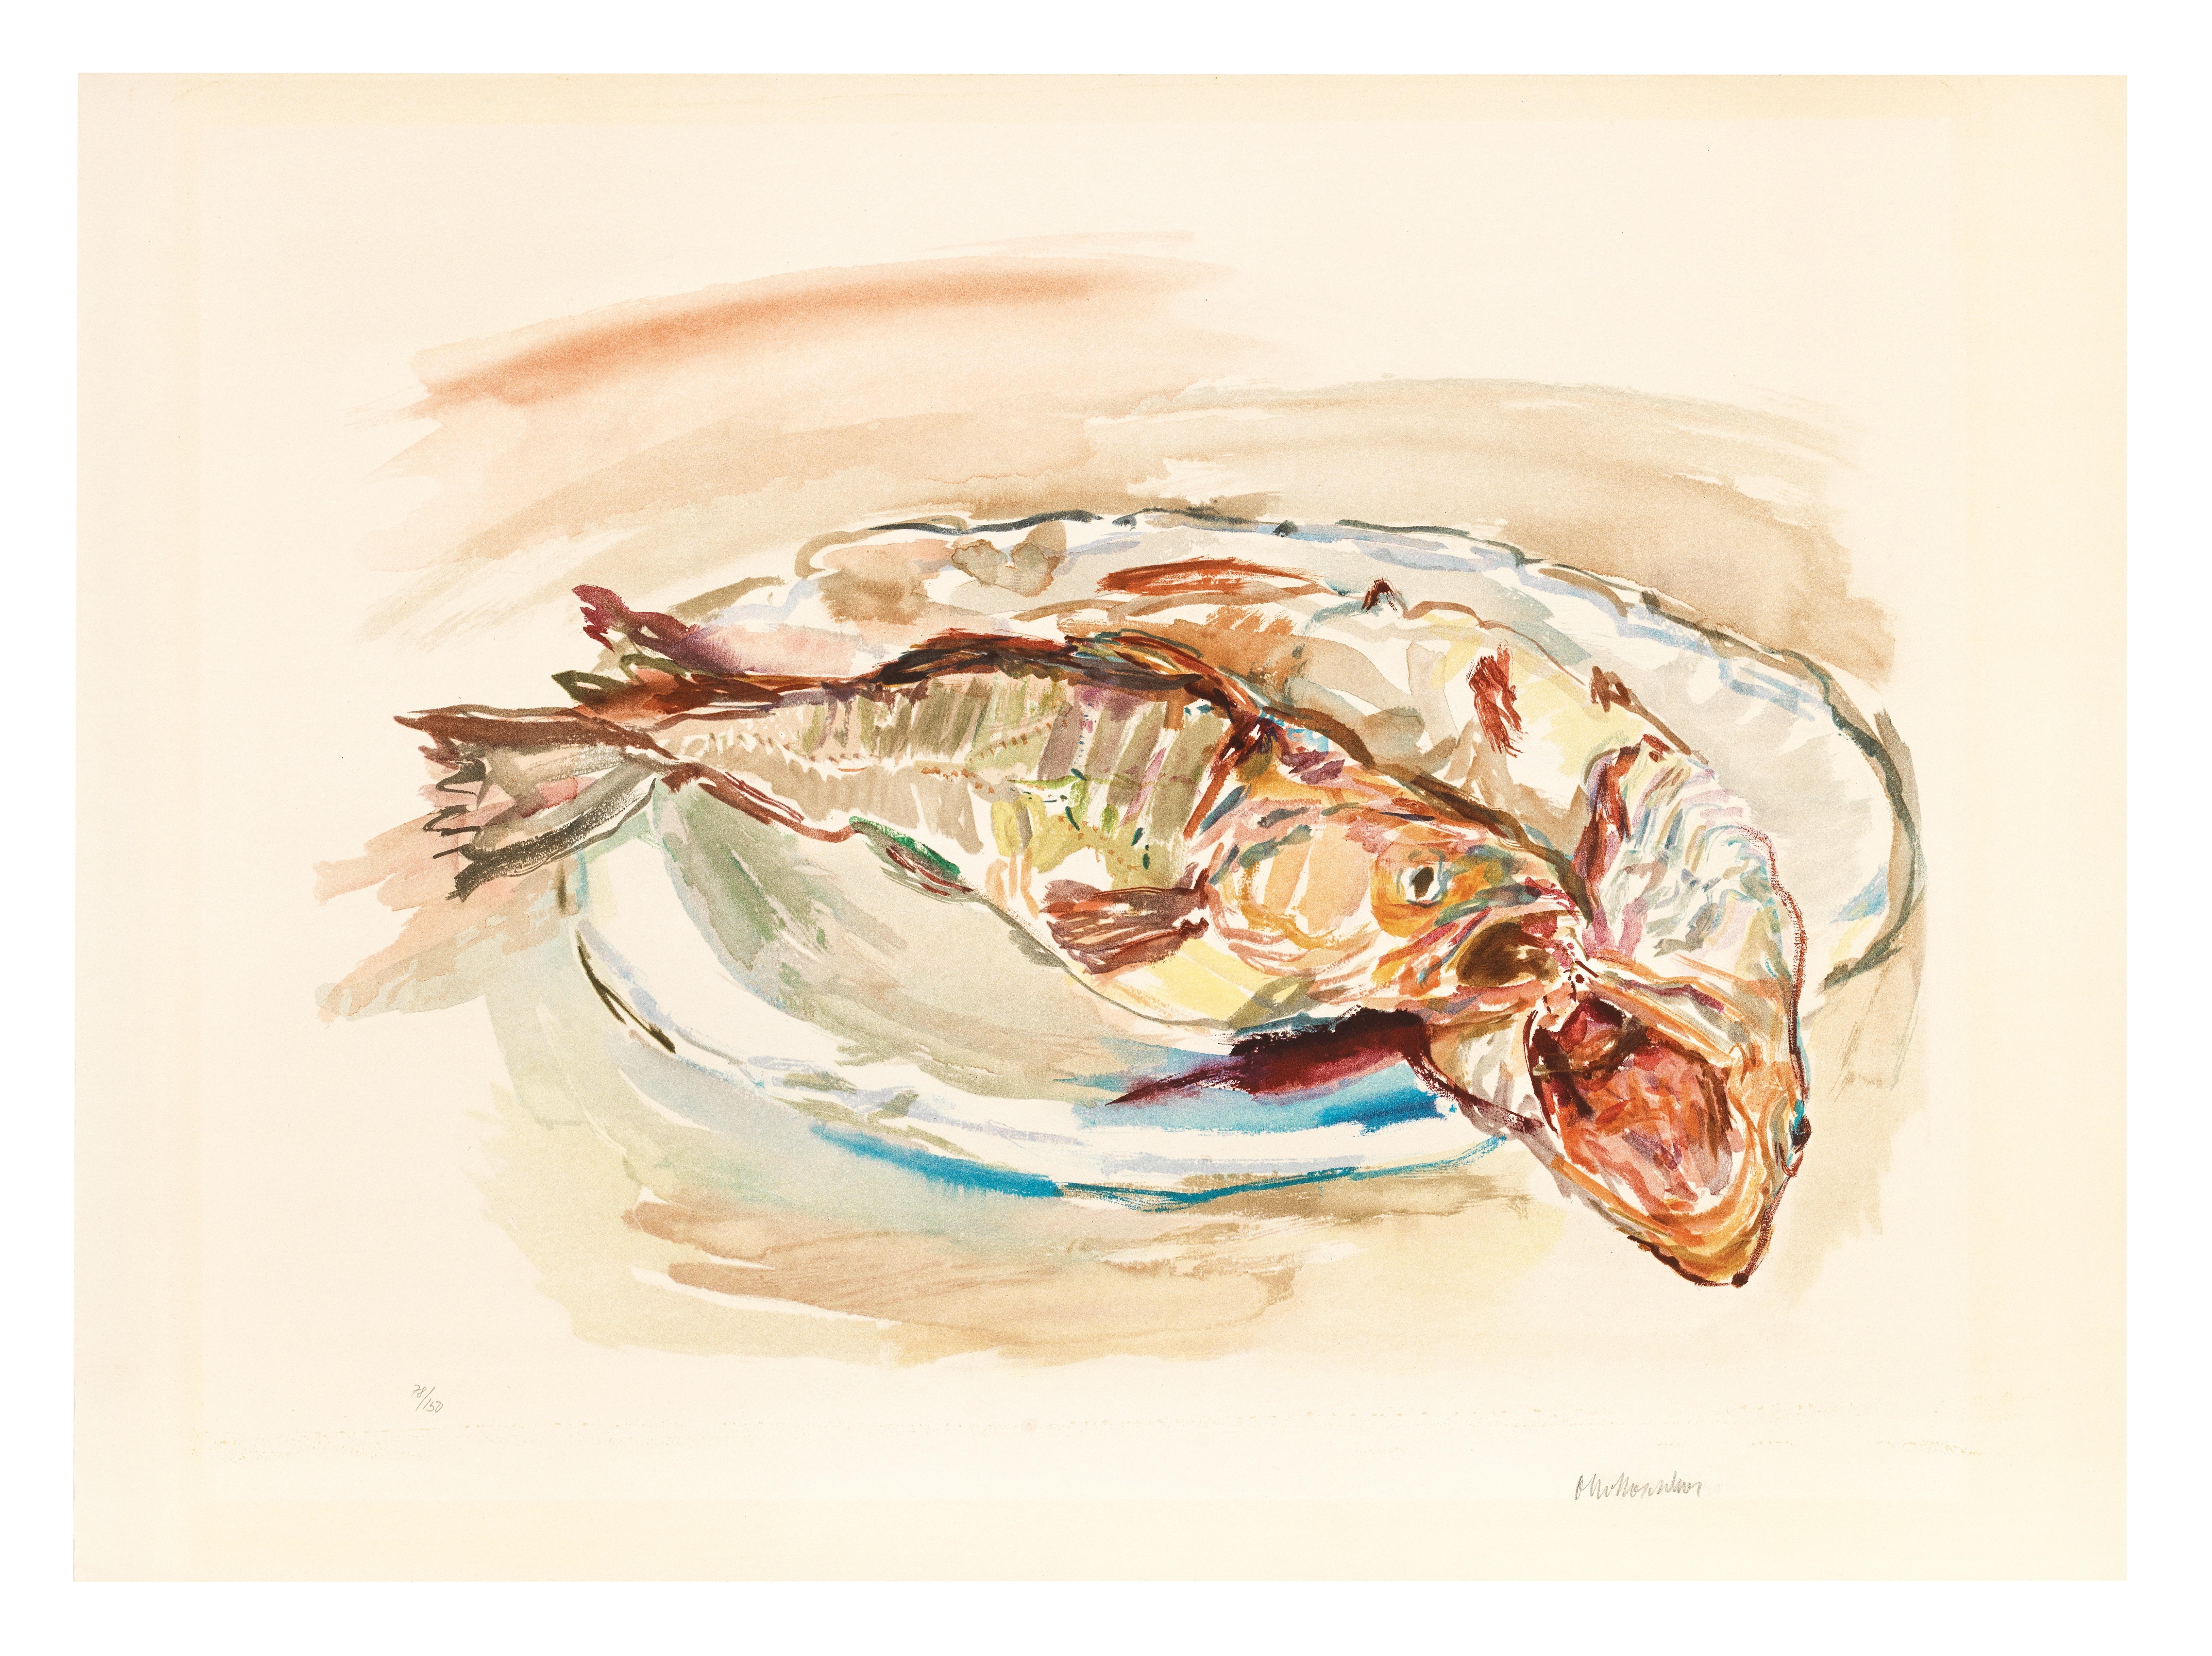 Artwork by Oskar Kokoschka, Fische, Made of Lithograph in color on vellum